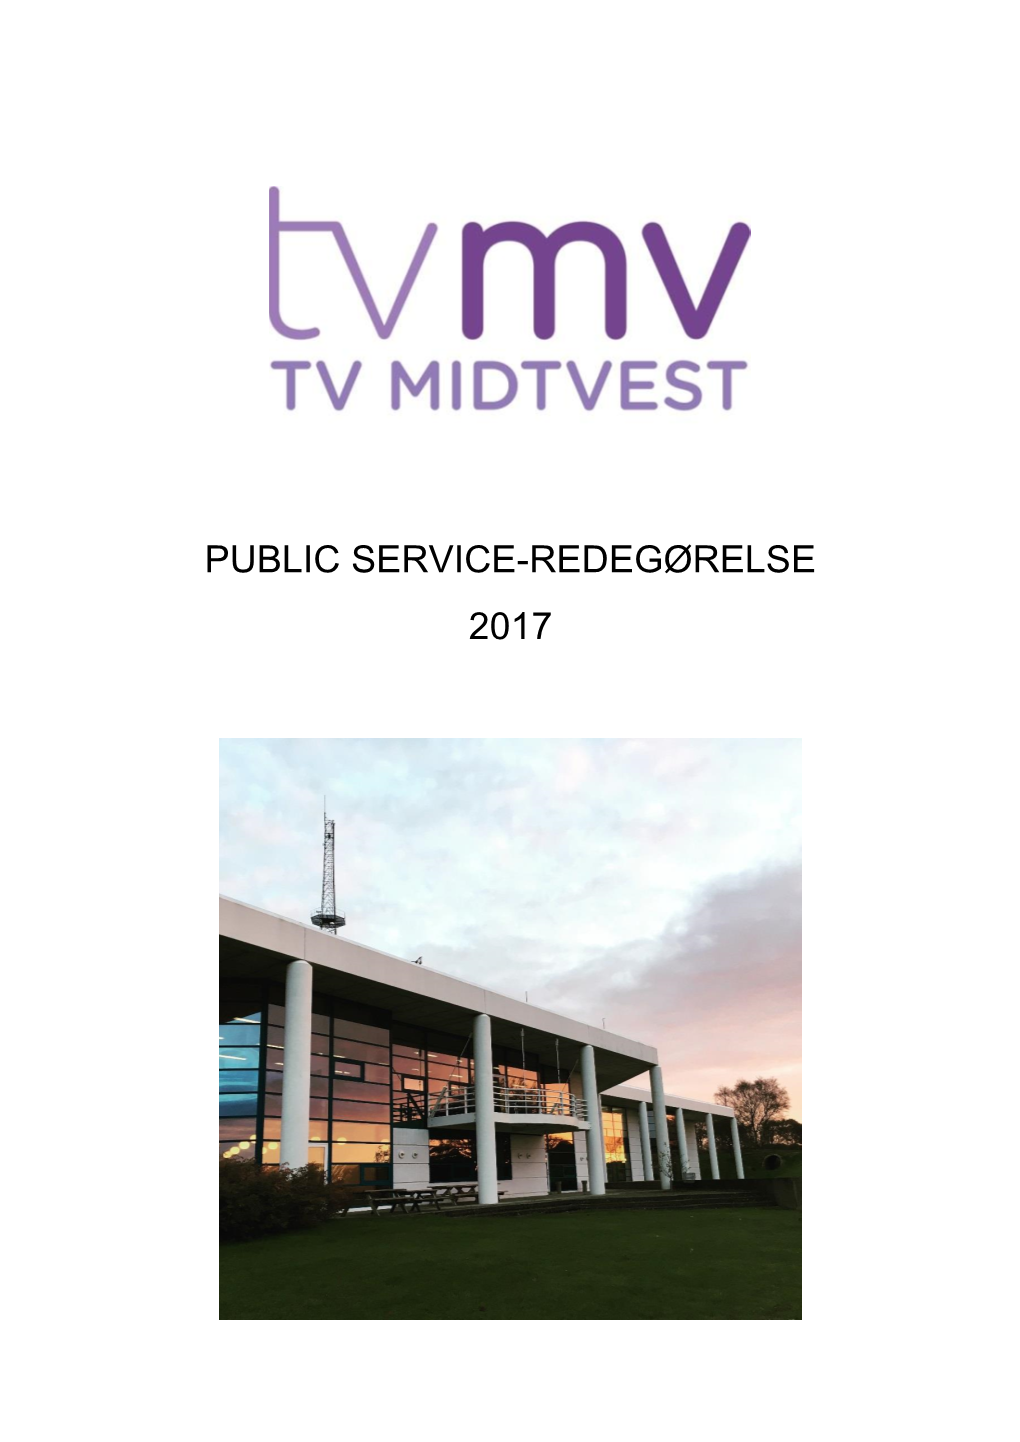 TV MIDTVEST 14 Regionernes Samarbejde På Konkrete Områder I Forlængelse Af Den I December 2013 Gennemførte Udredning 16 5